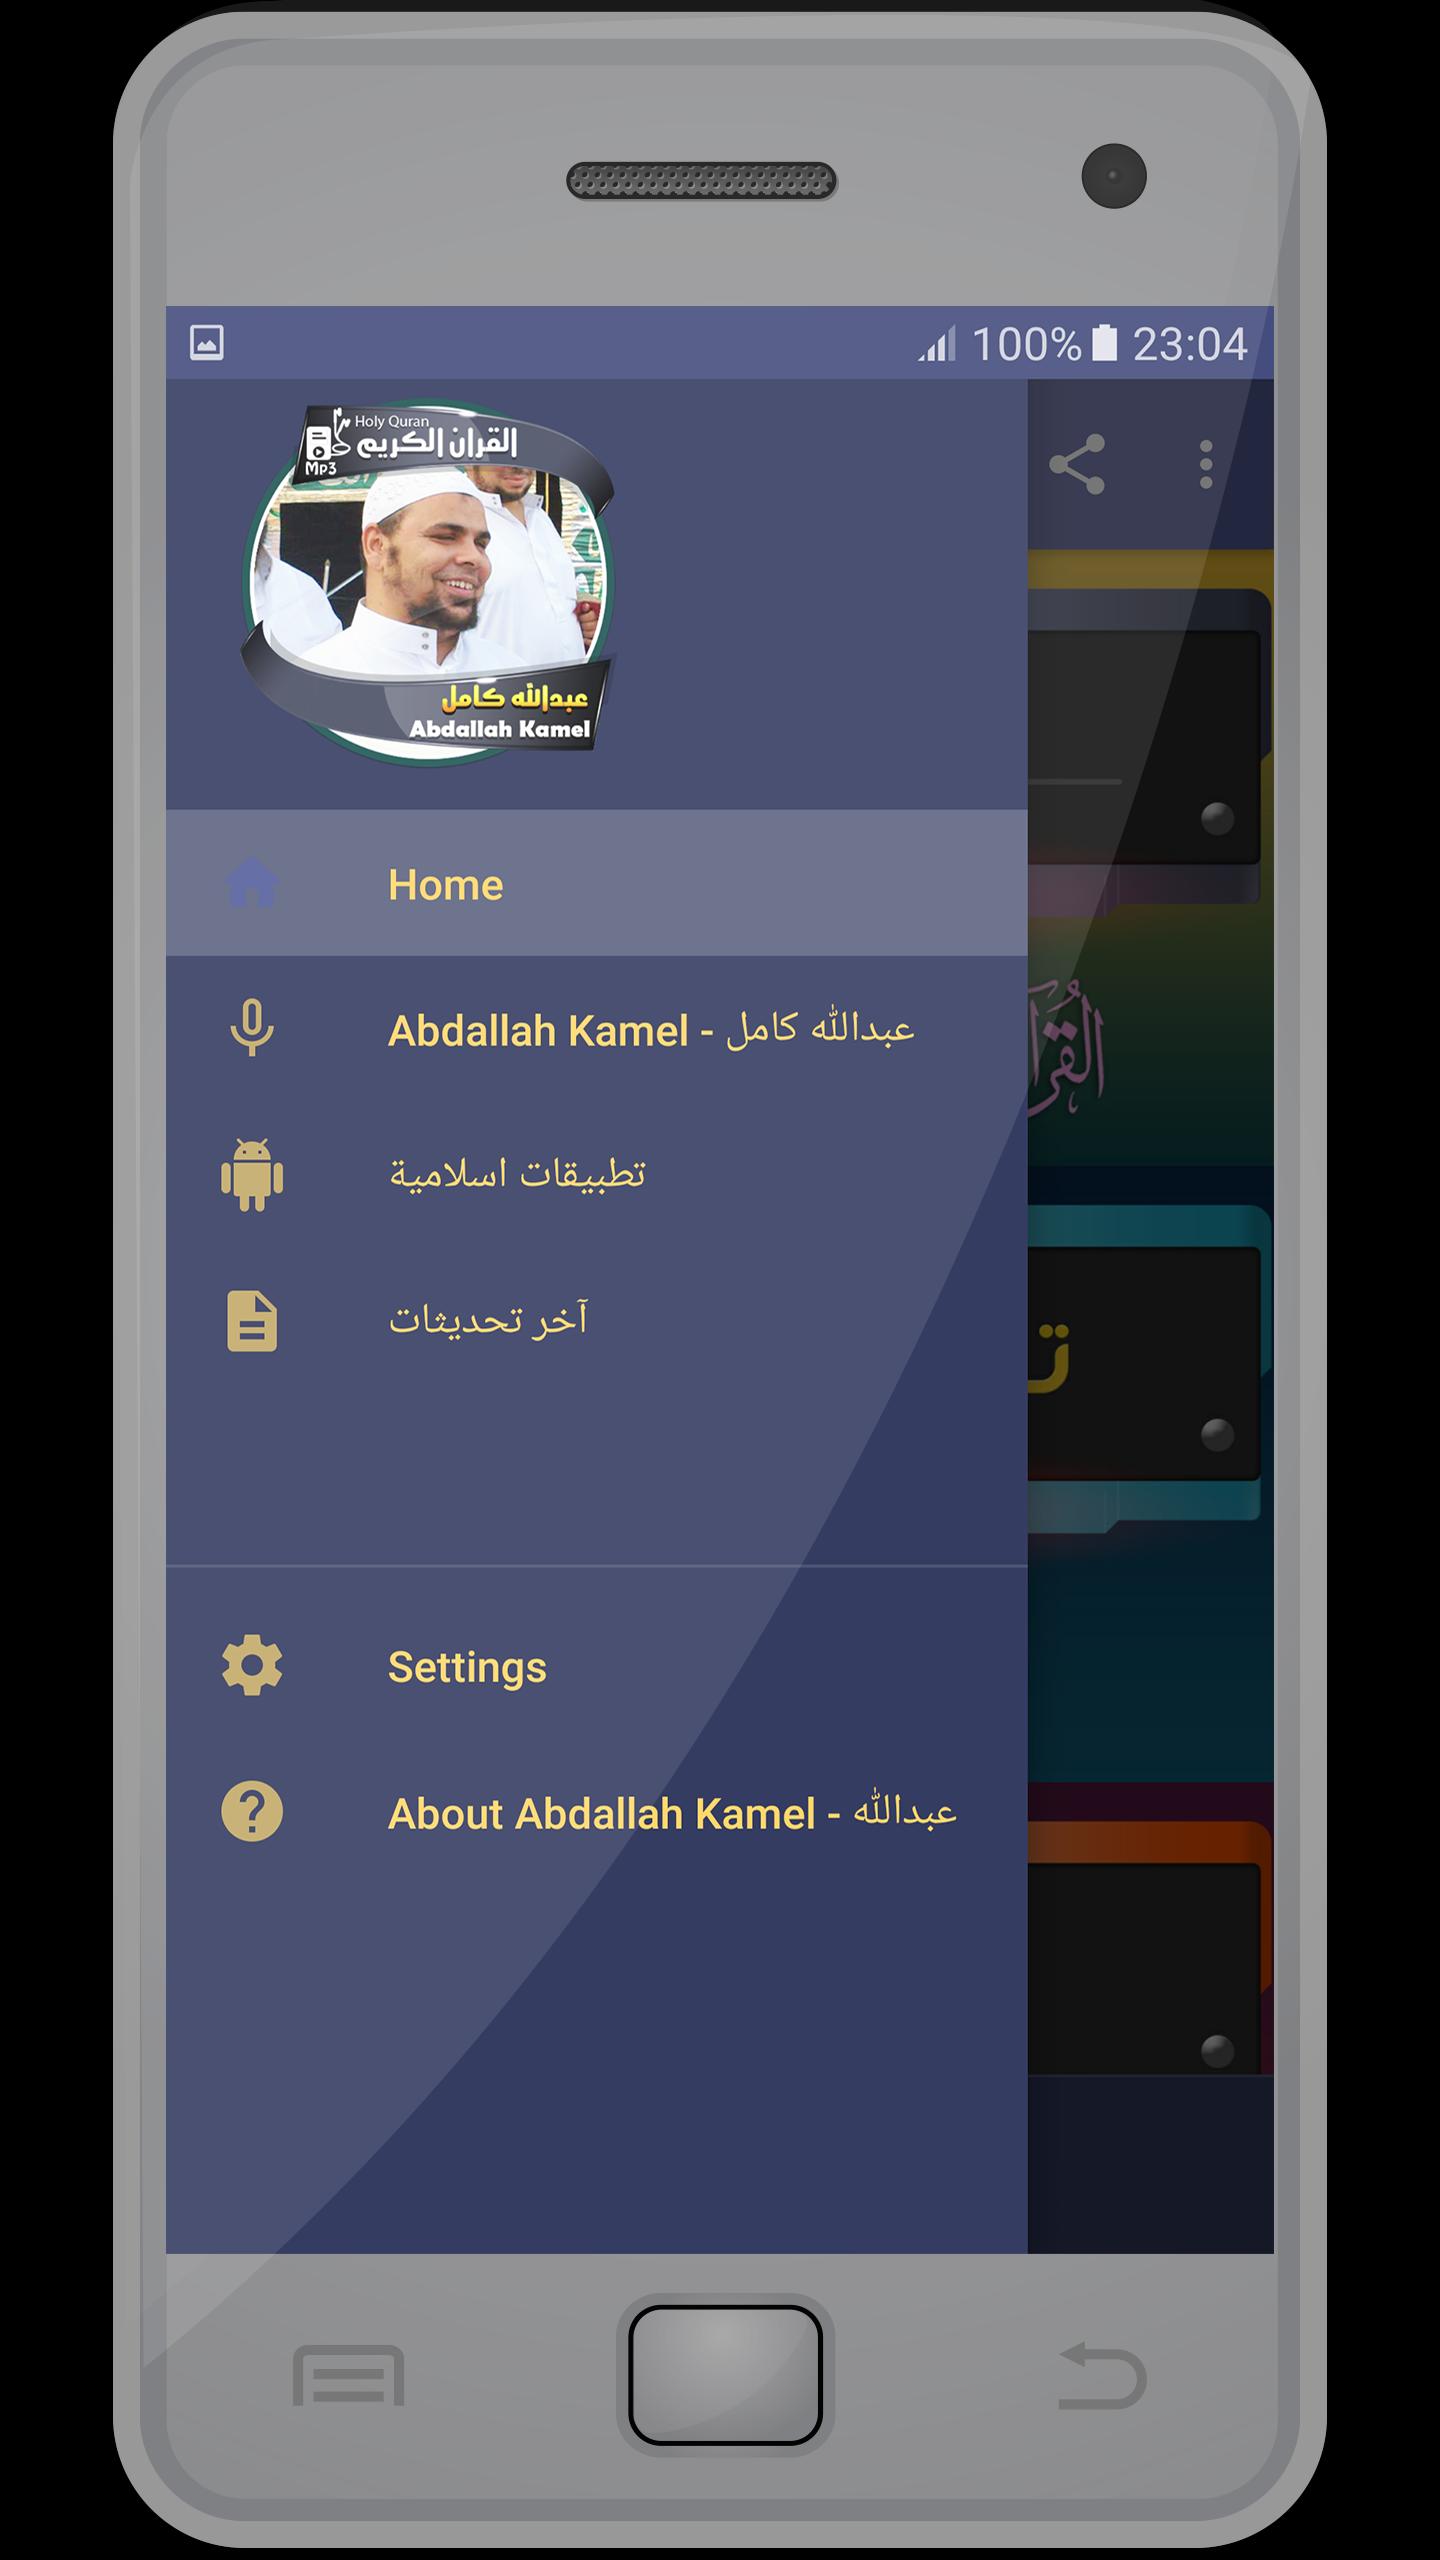 الشيخ عبدالله كامل القران الكريم كاملا For Android Apk Download